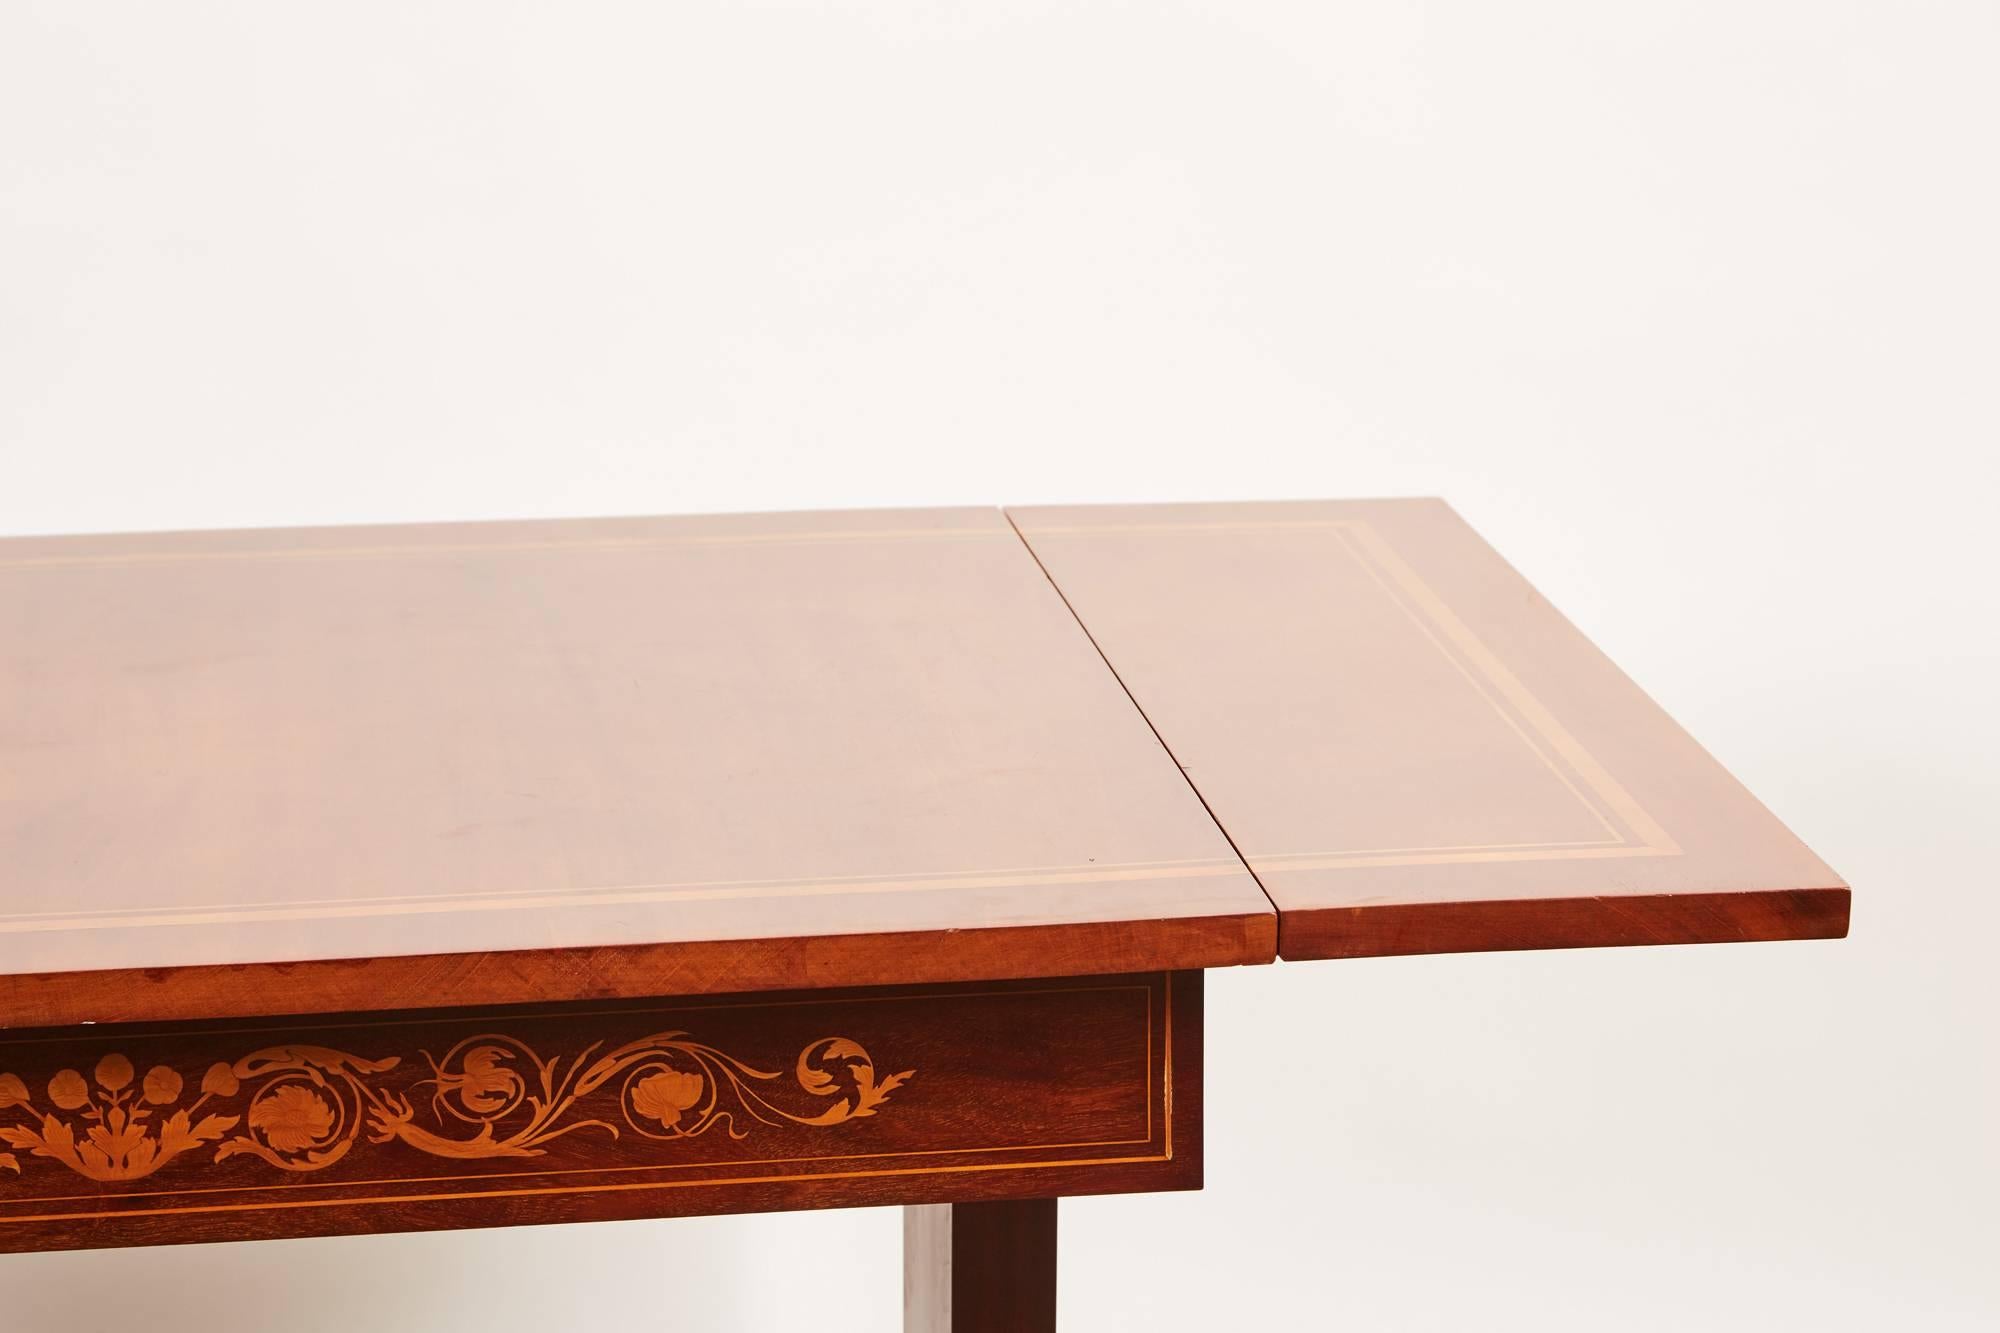 19th Century Danish Mahogany Empire Drop-Leaf Table with Intarsia Inlay 1